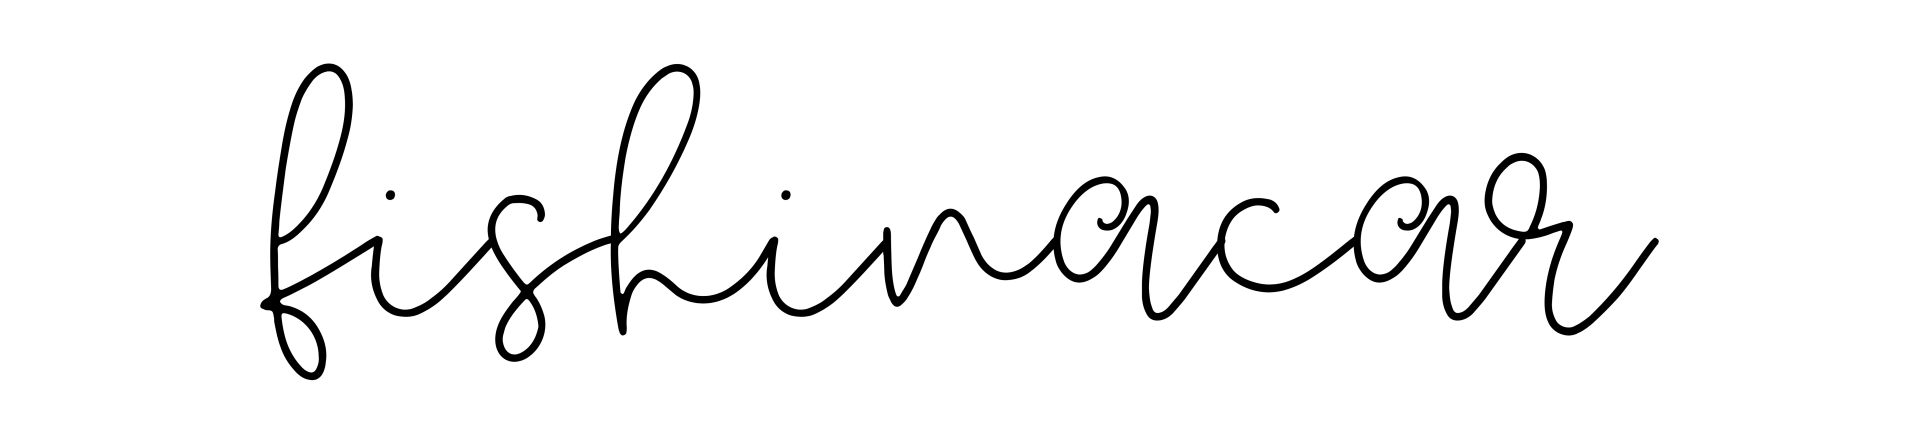 fishinacar logo